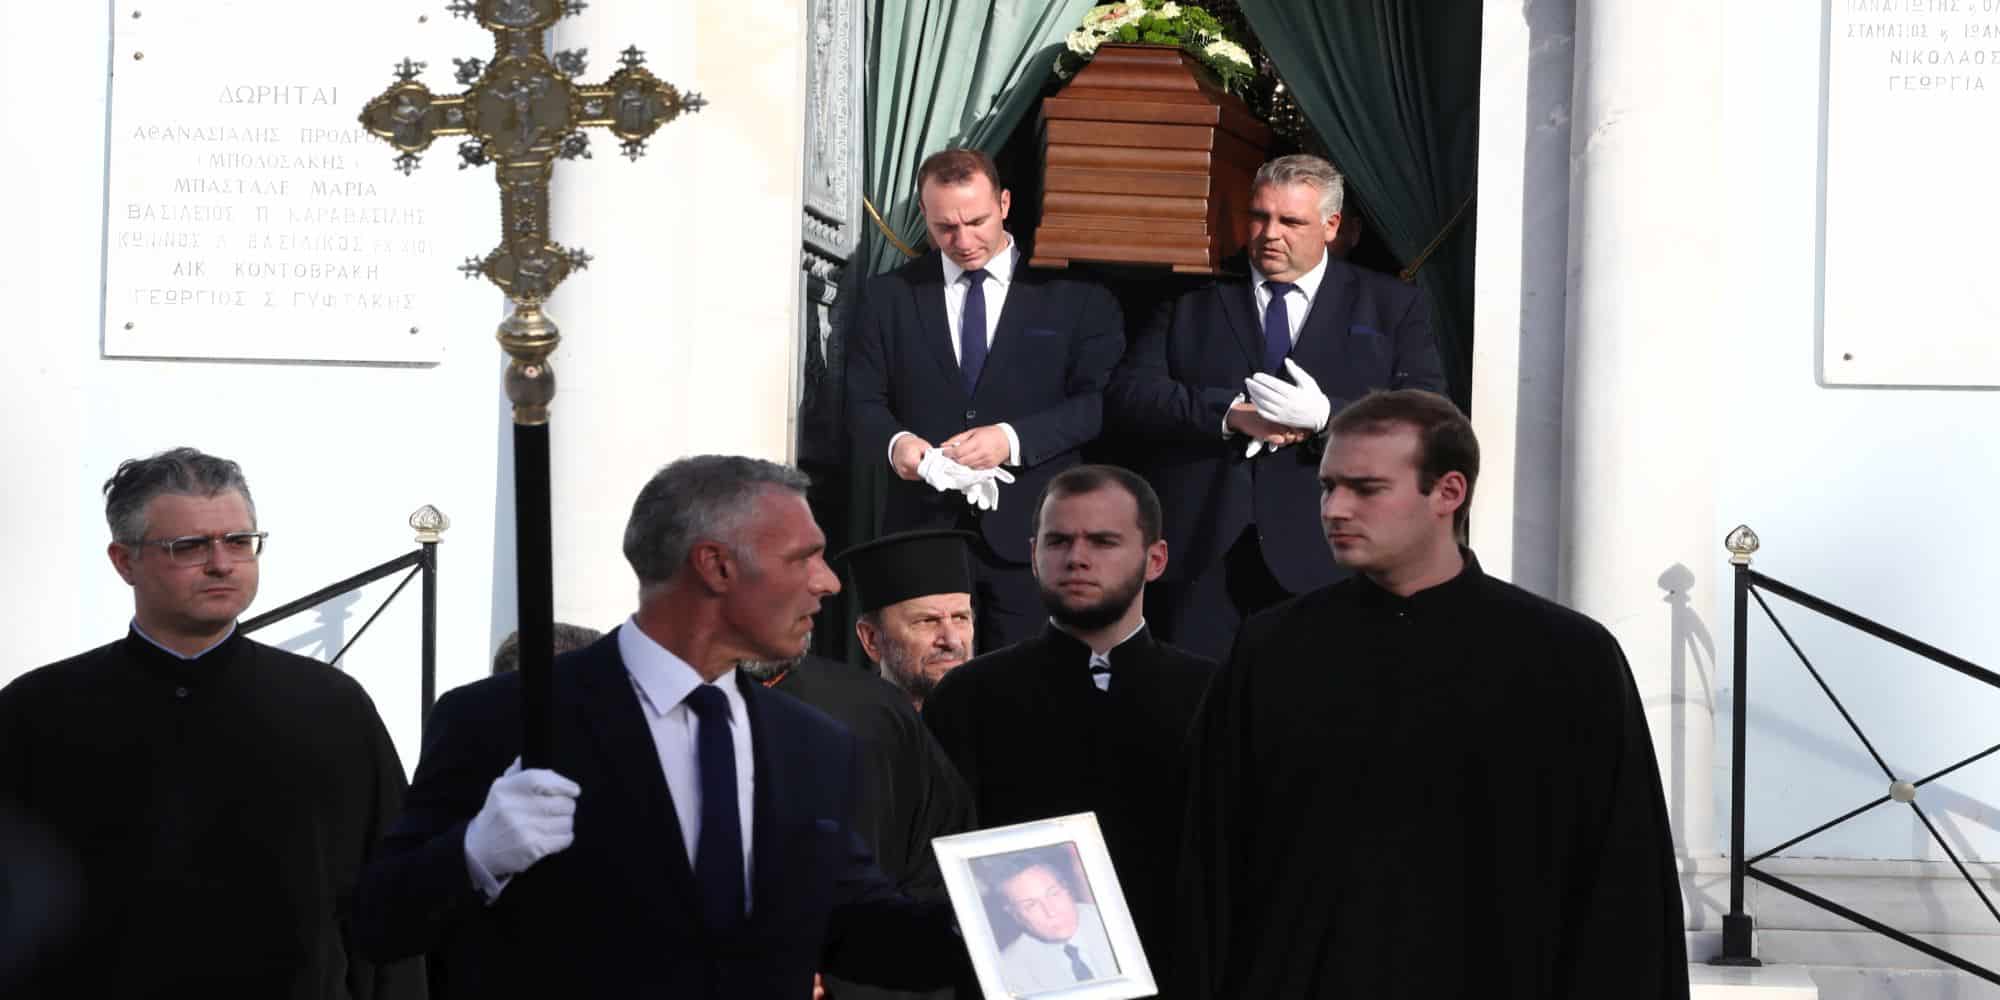 Το φέρετρο και η φωτογραφία του Γιάννη Διακογιάννη στην κηδεία του